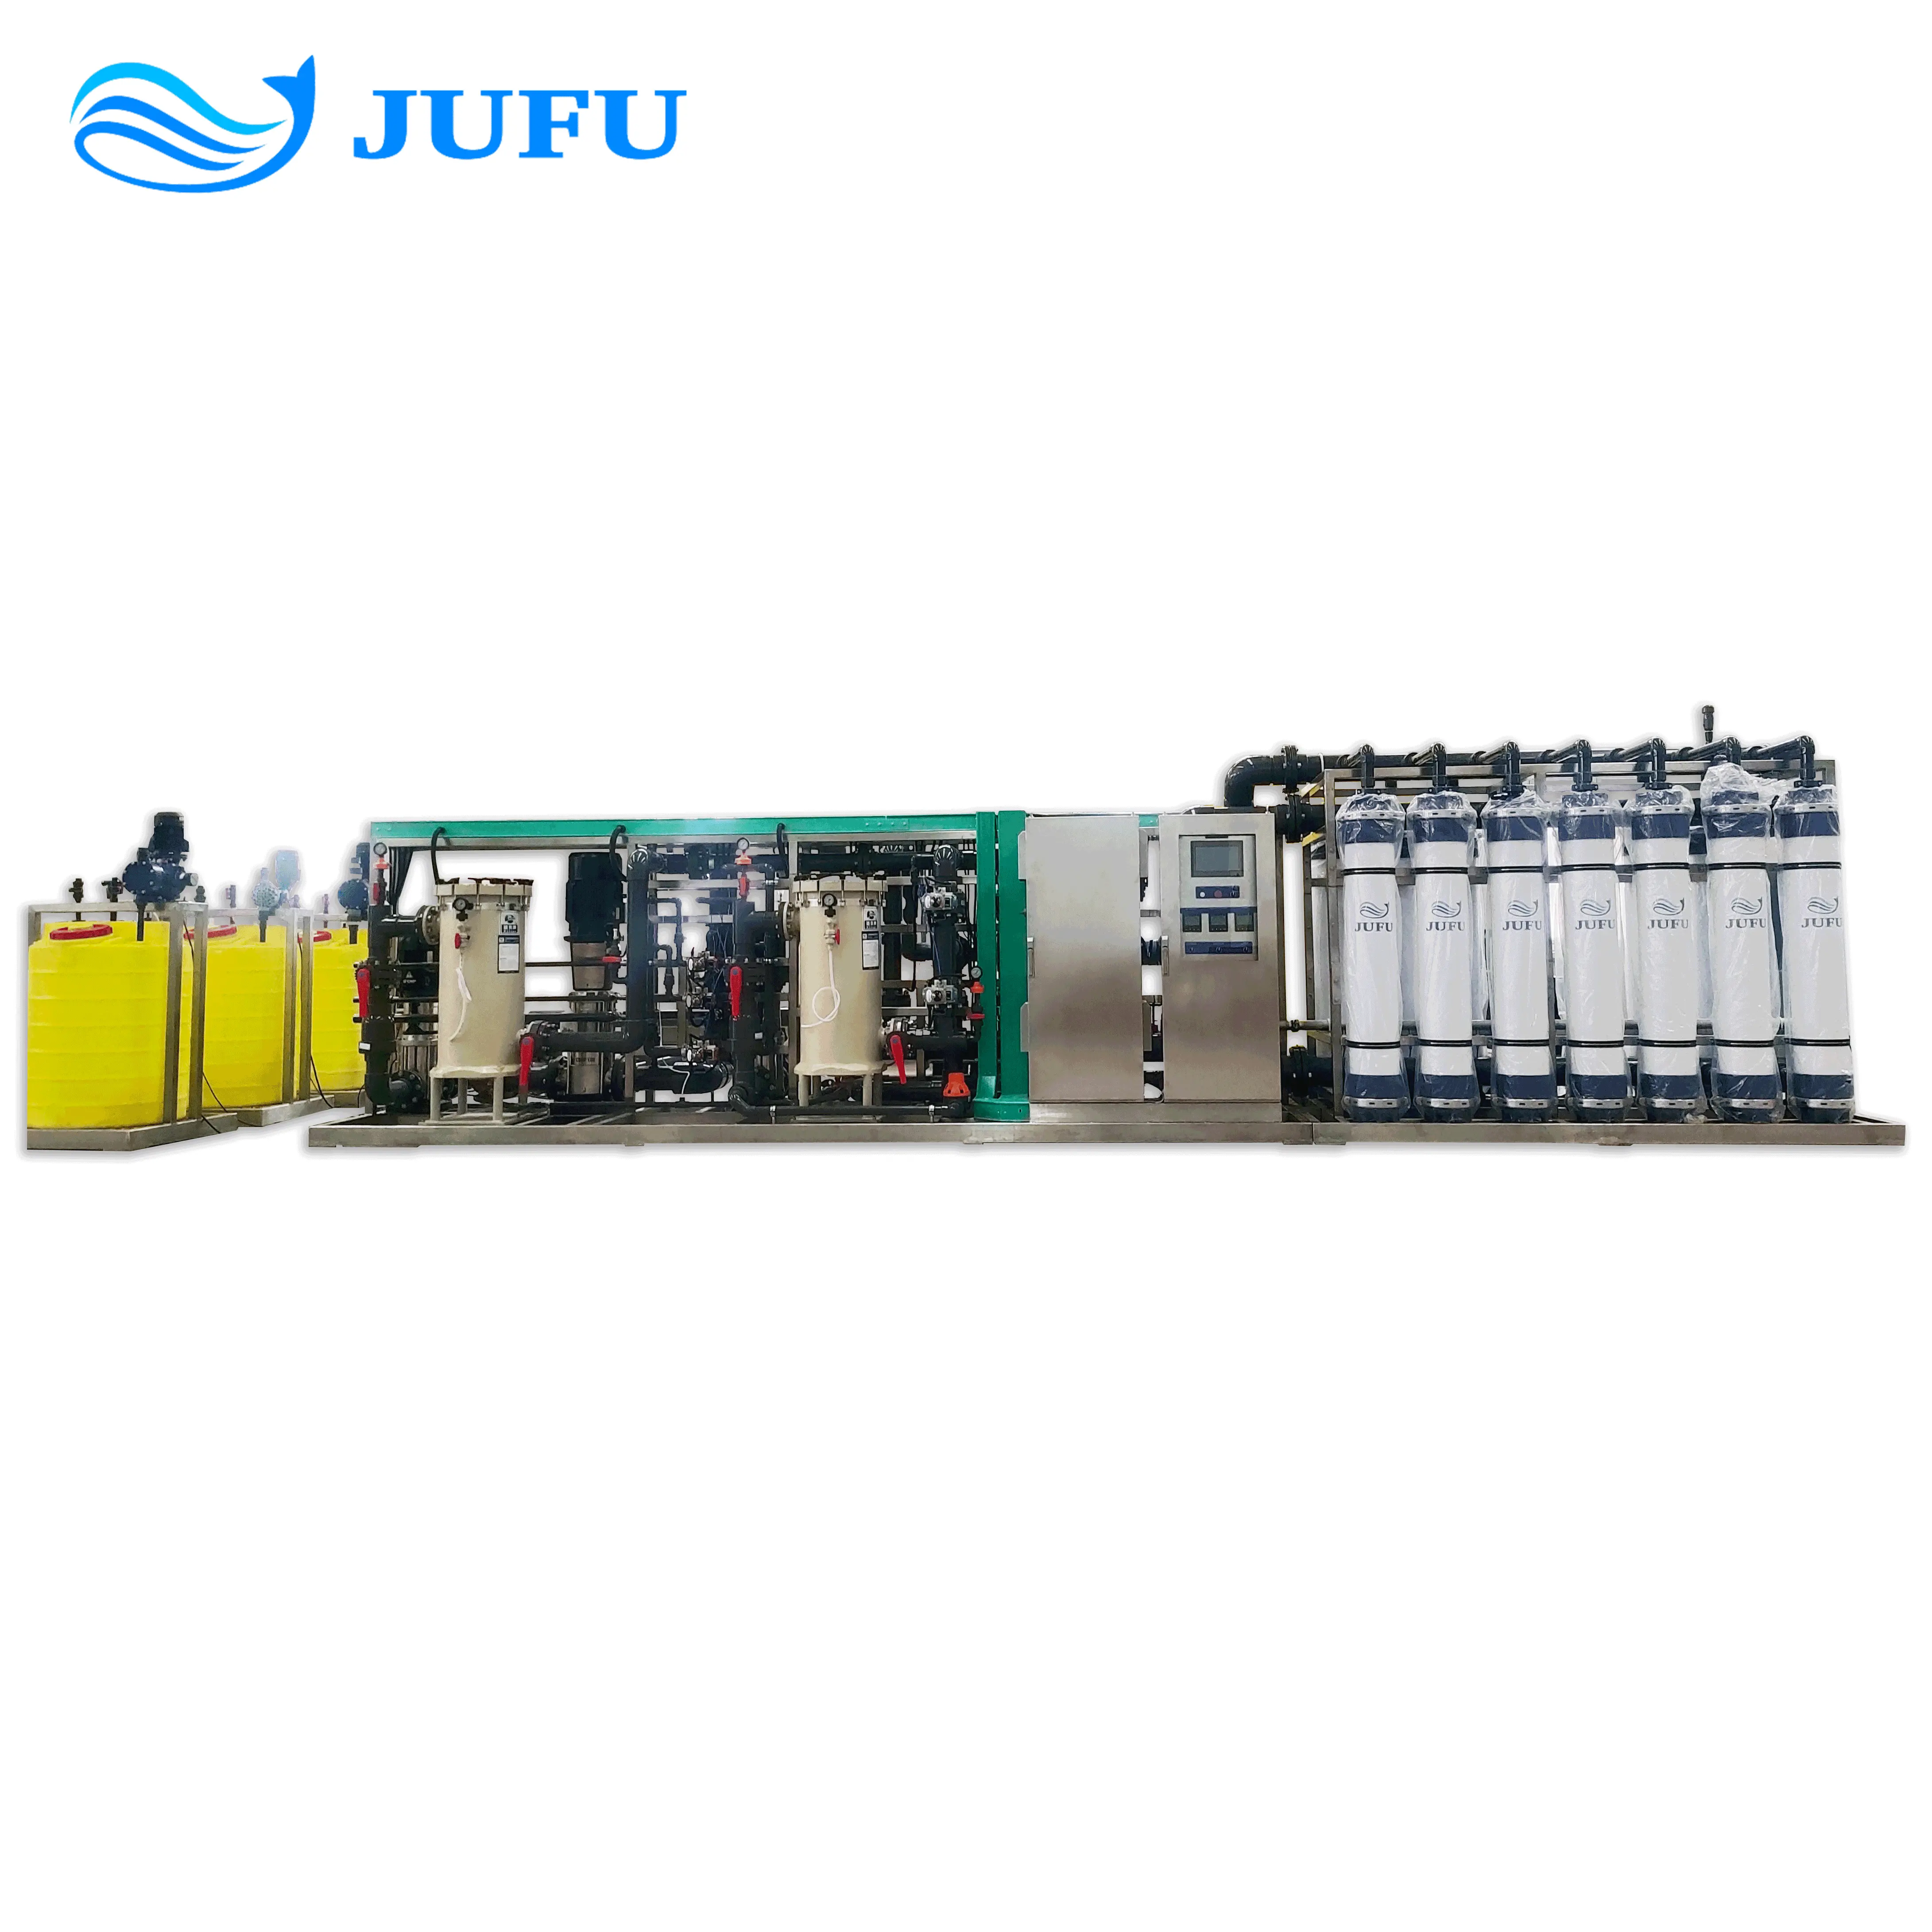 40tph UF sistemi su arıtıcısı su arıtma tesisi ultrafiltrasyon ekipmanları